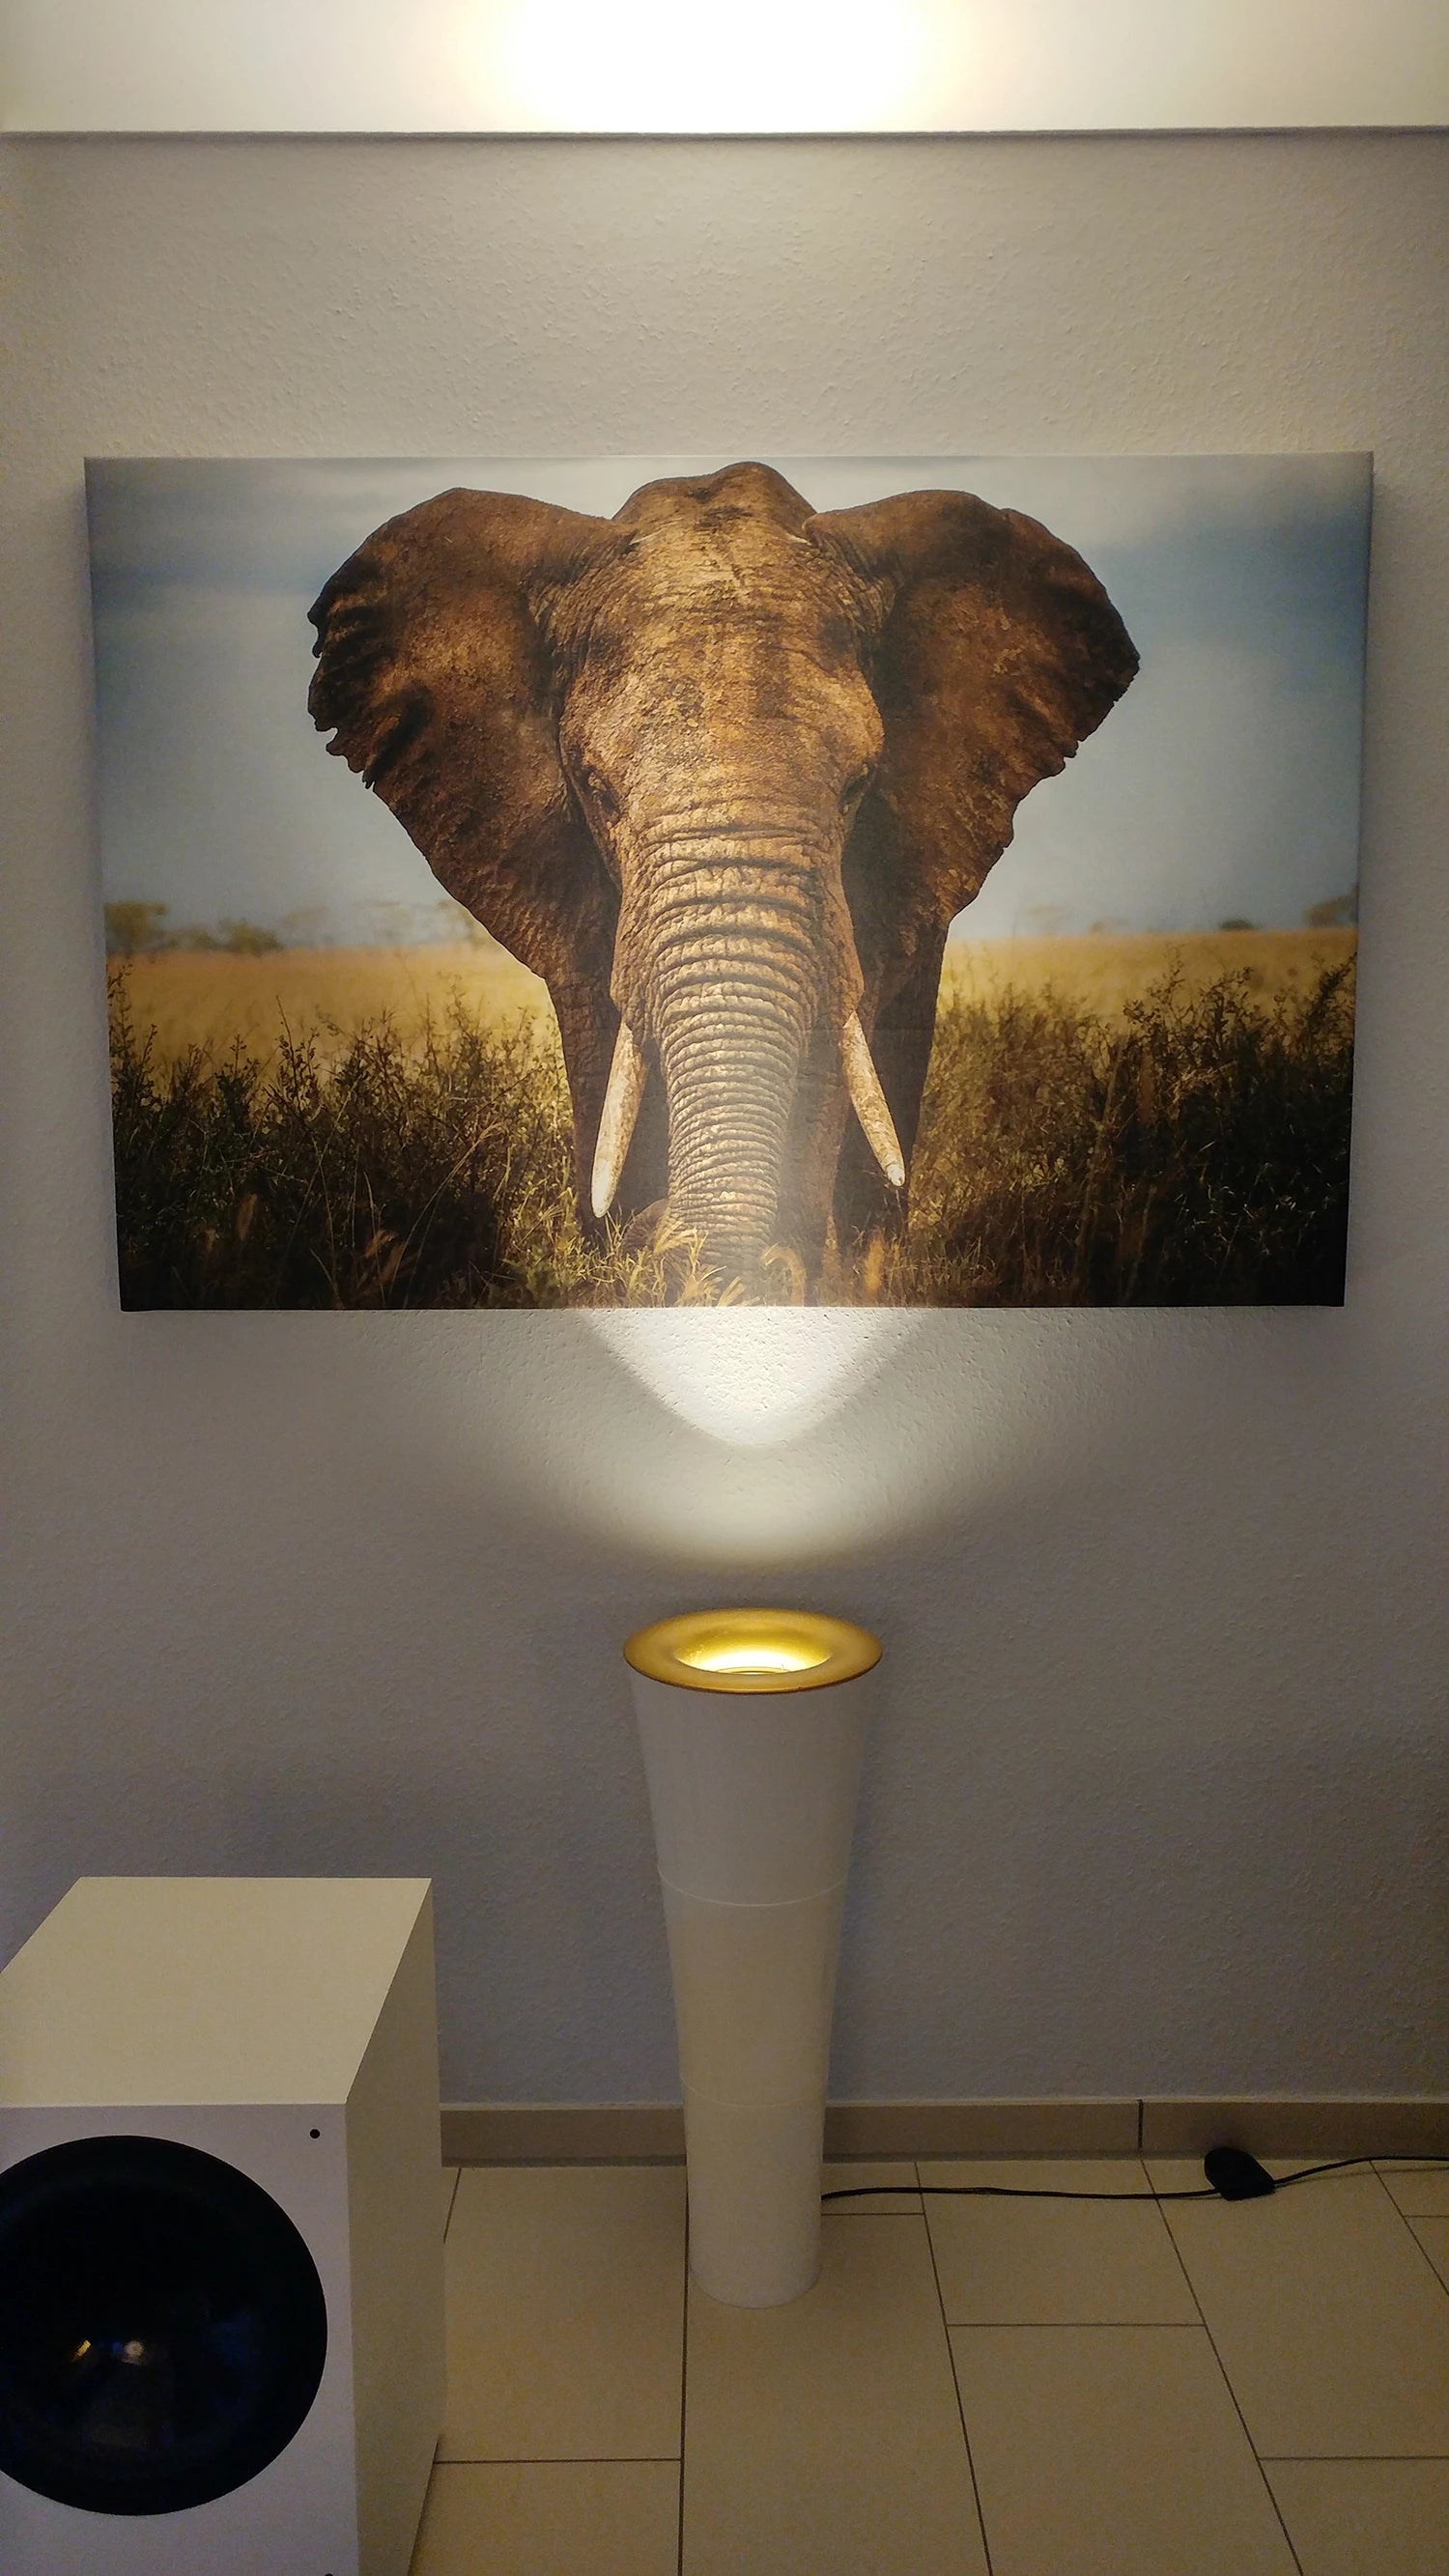 selbst gestaltete Leinwand als Akustikbild mit dem Stoff Silencio© bedruckt mit einem Elefanten und einem Lichtstrahler angestrahlt